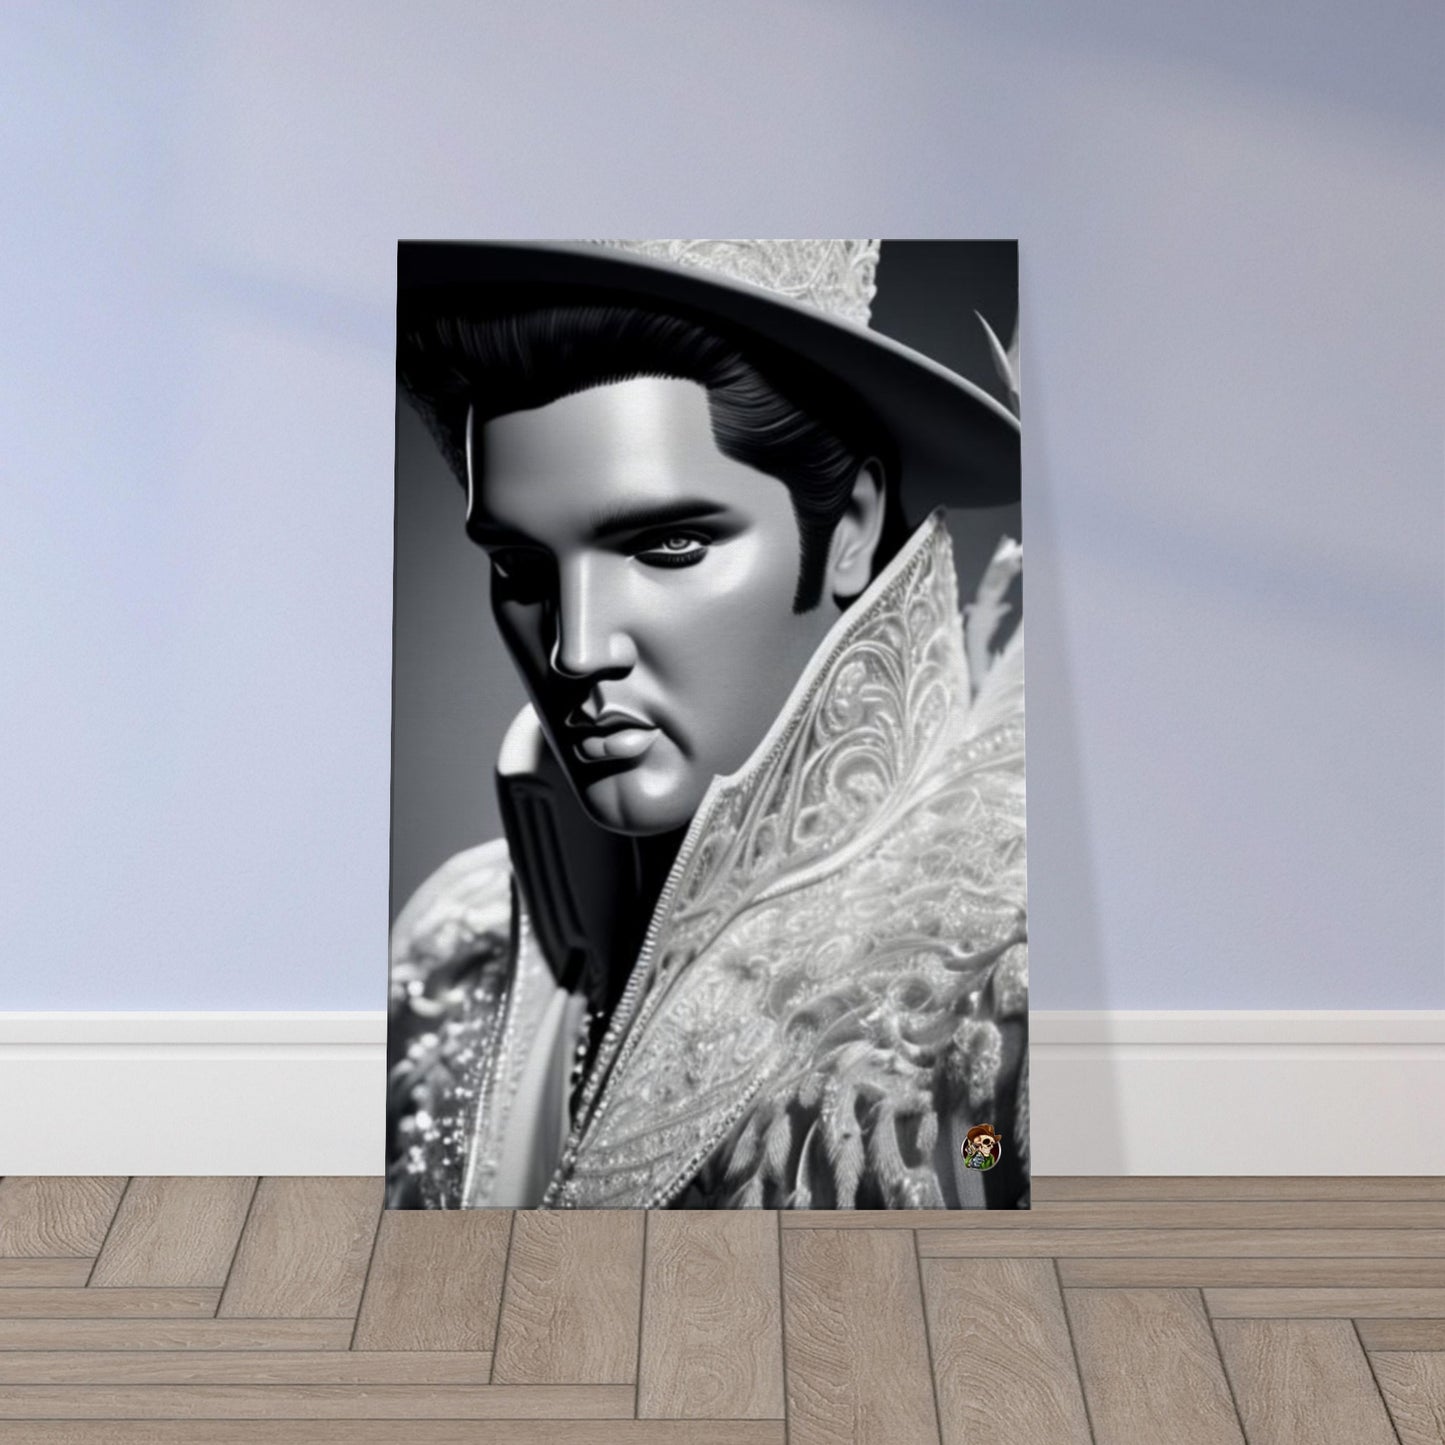 Elvis Presley Canvas created by Ötzi Frosty